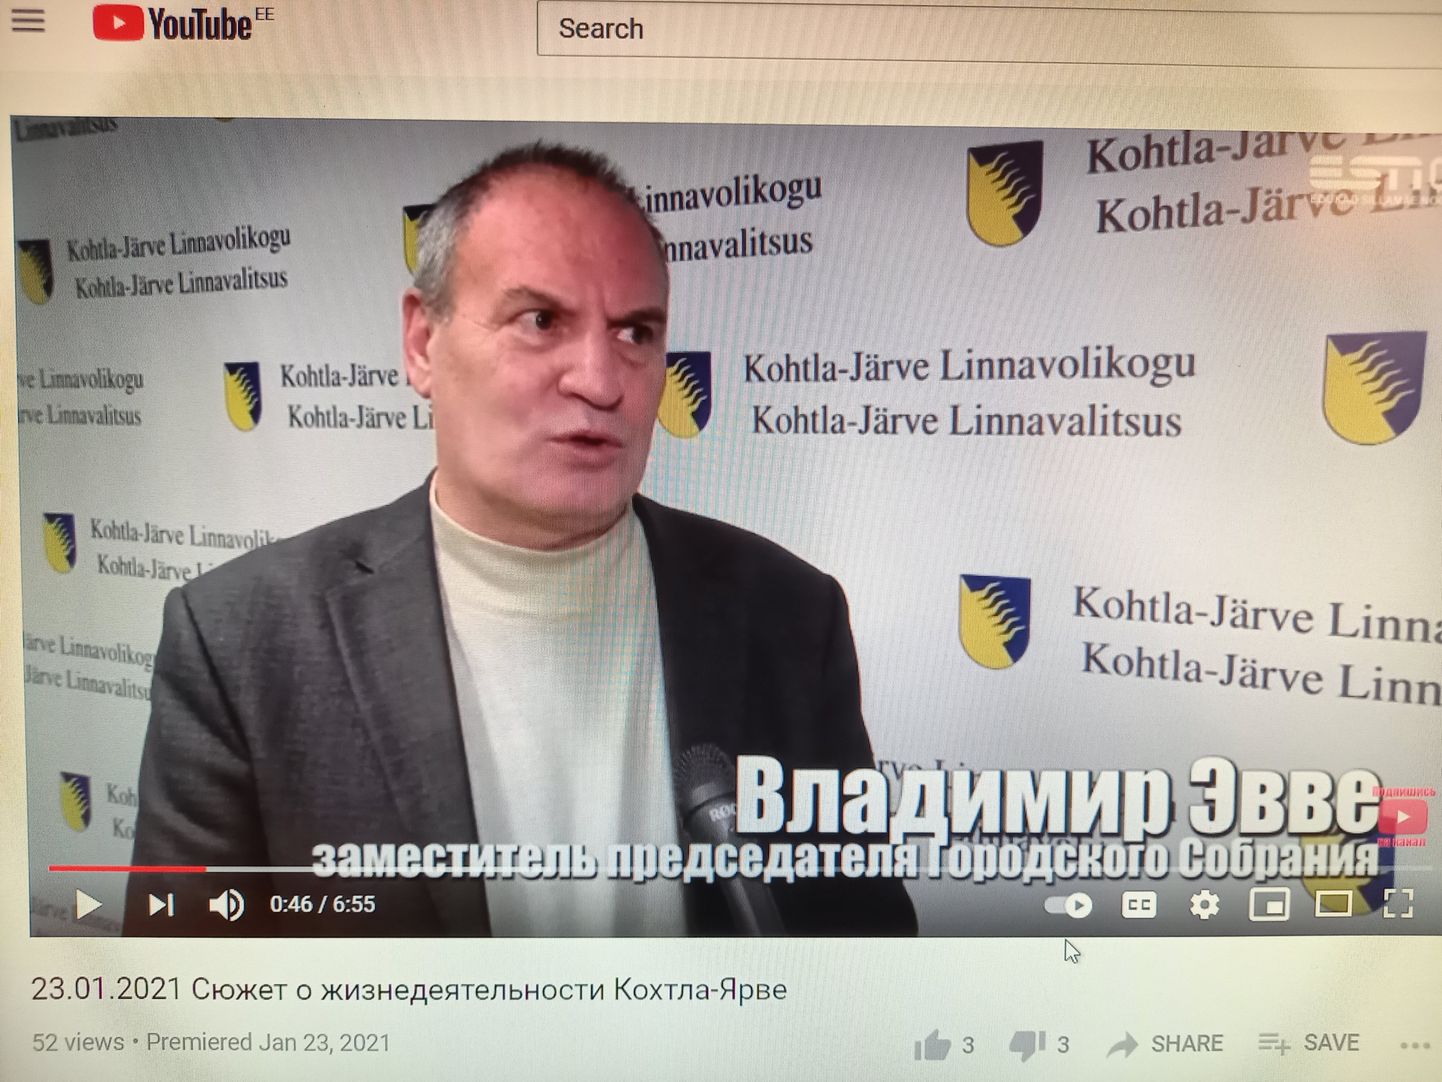 Kohtla-Järve volikogu aseesimees Vladimir Evve skandaali põhjustanud videolõigus, kus ta kiitis Keskerakonda ja siunas teisi erakondi.